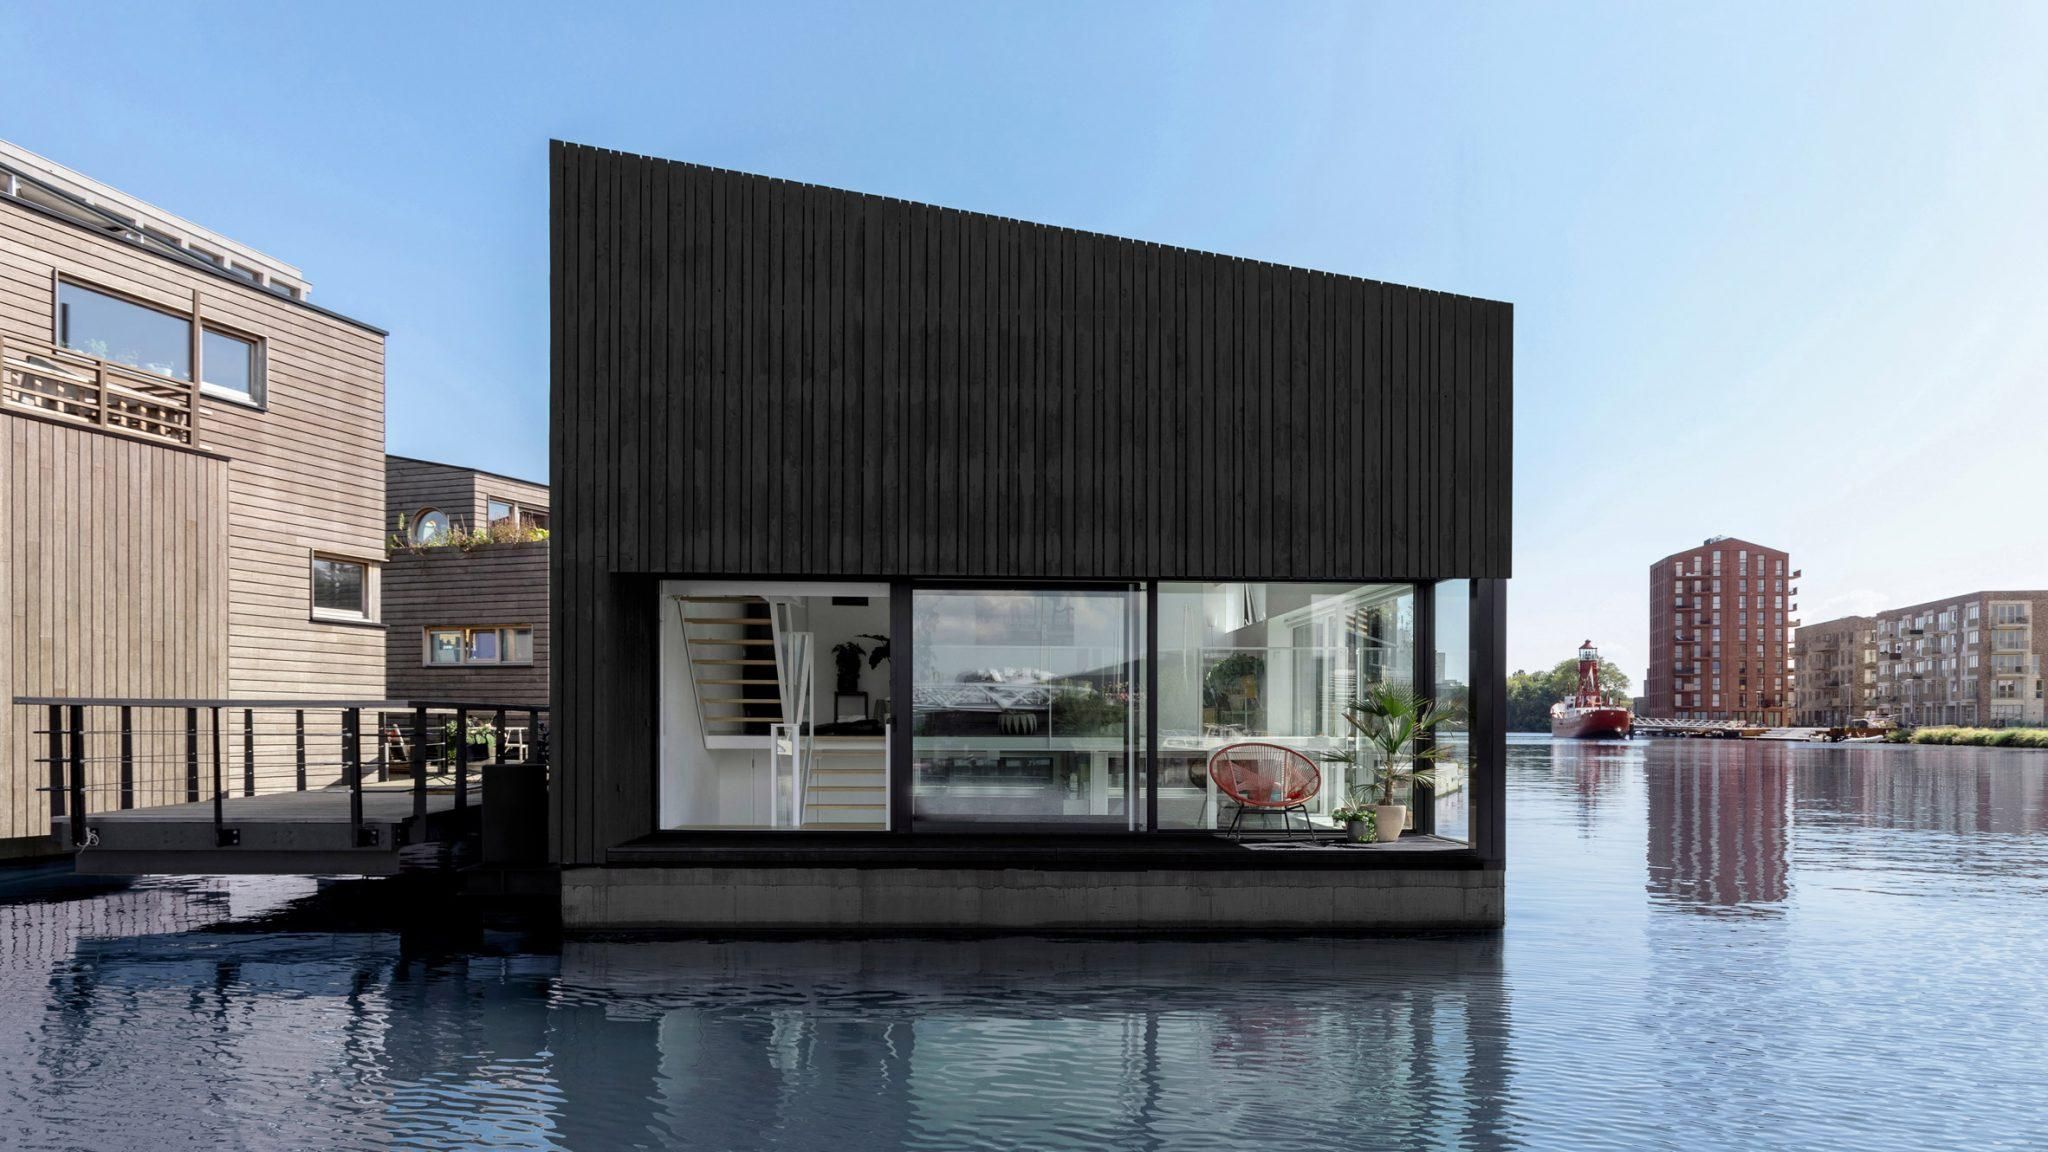 Життя на воді: як виглядає фантастичний новозбудований плавучий дім в Амстердамі – фото 